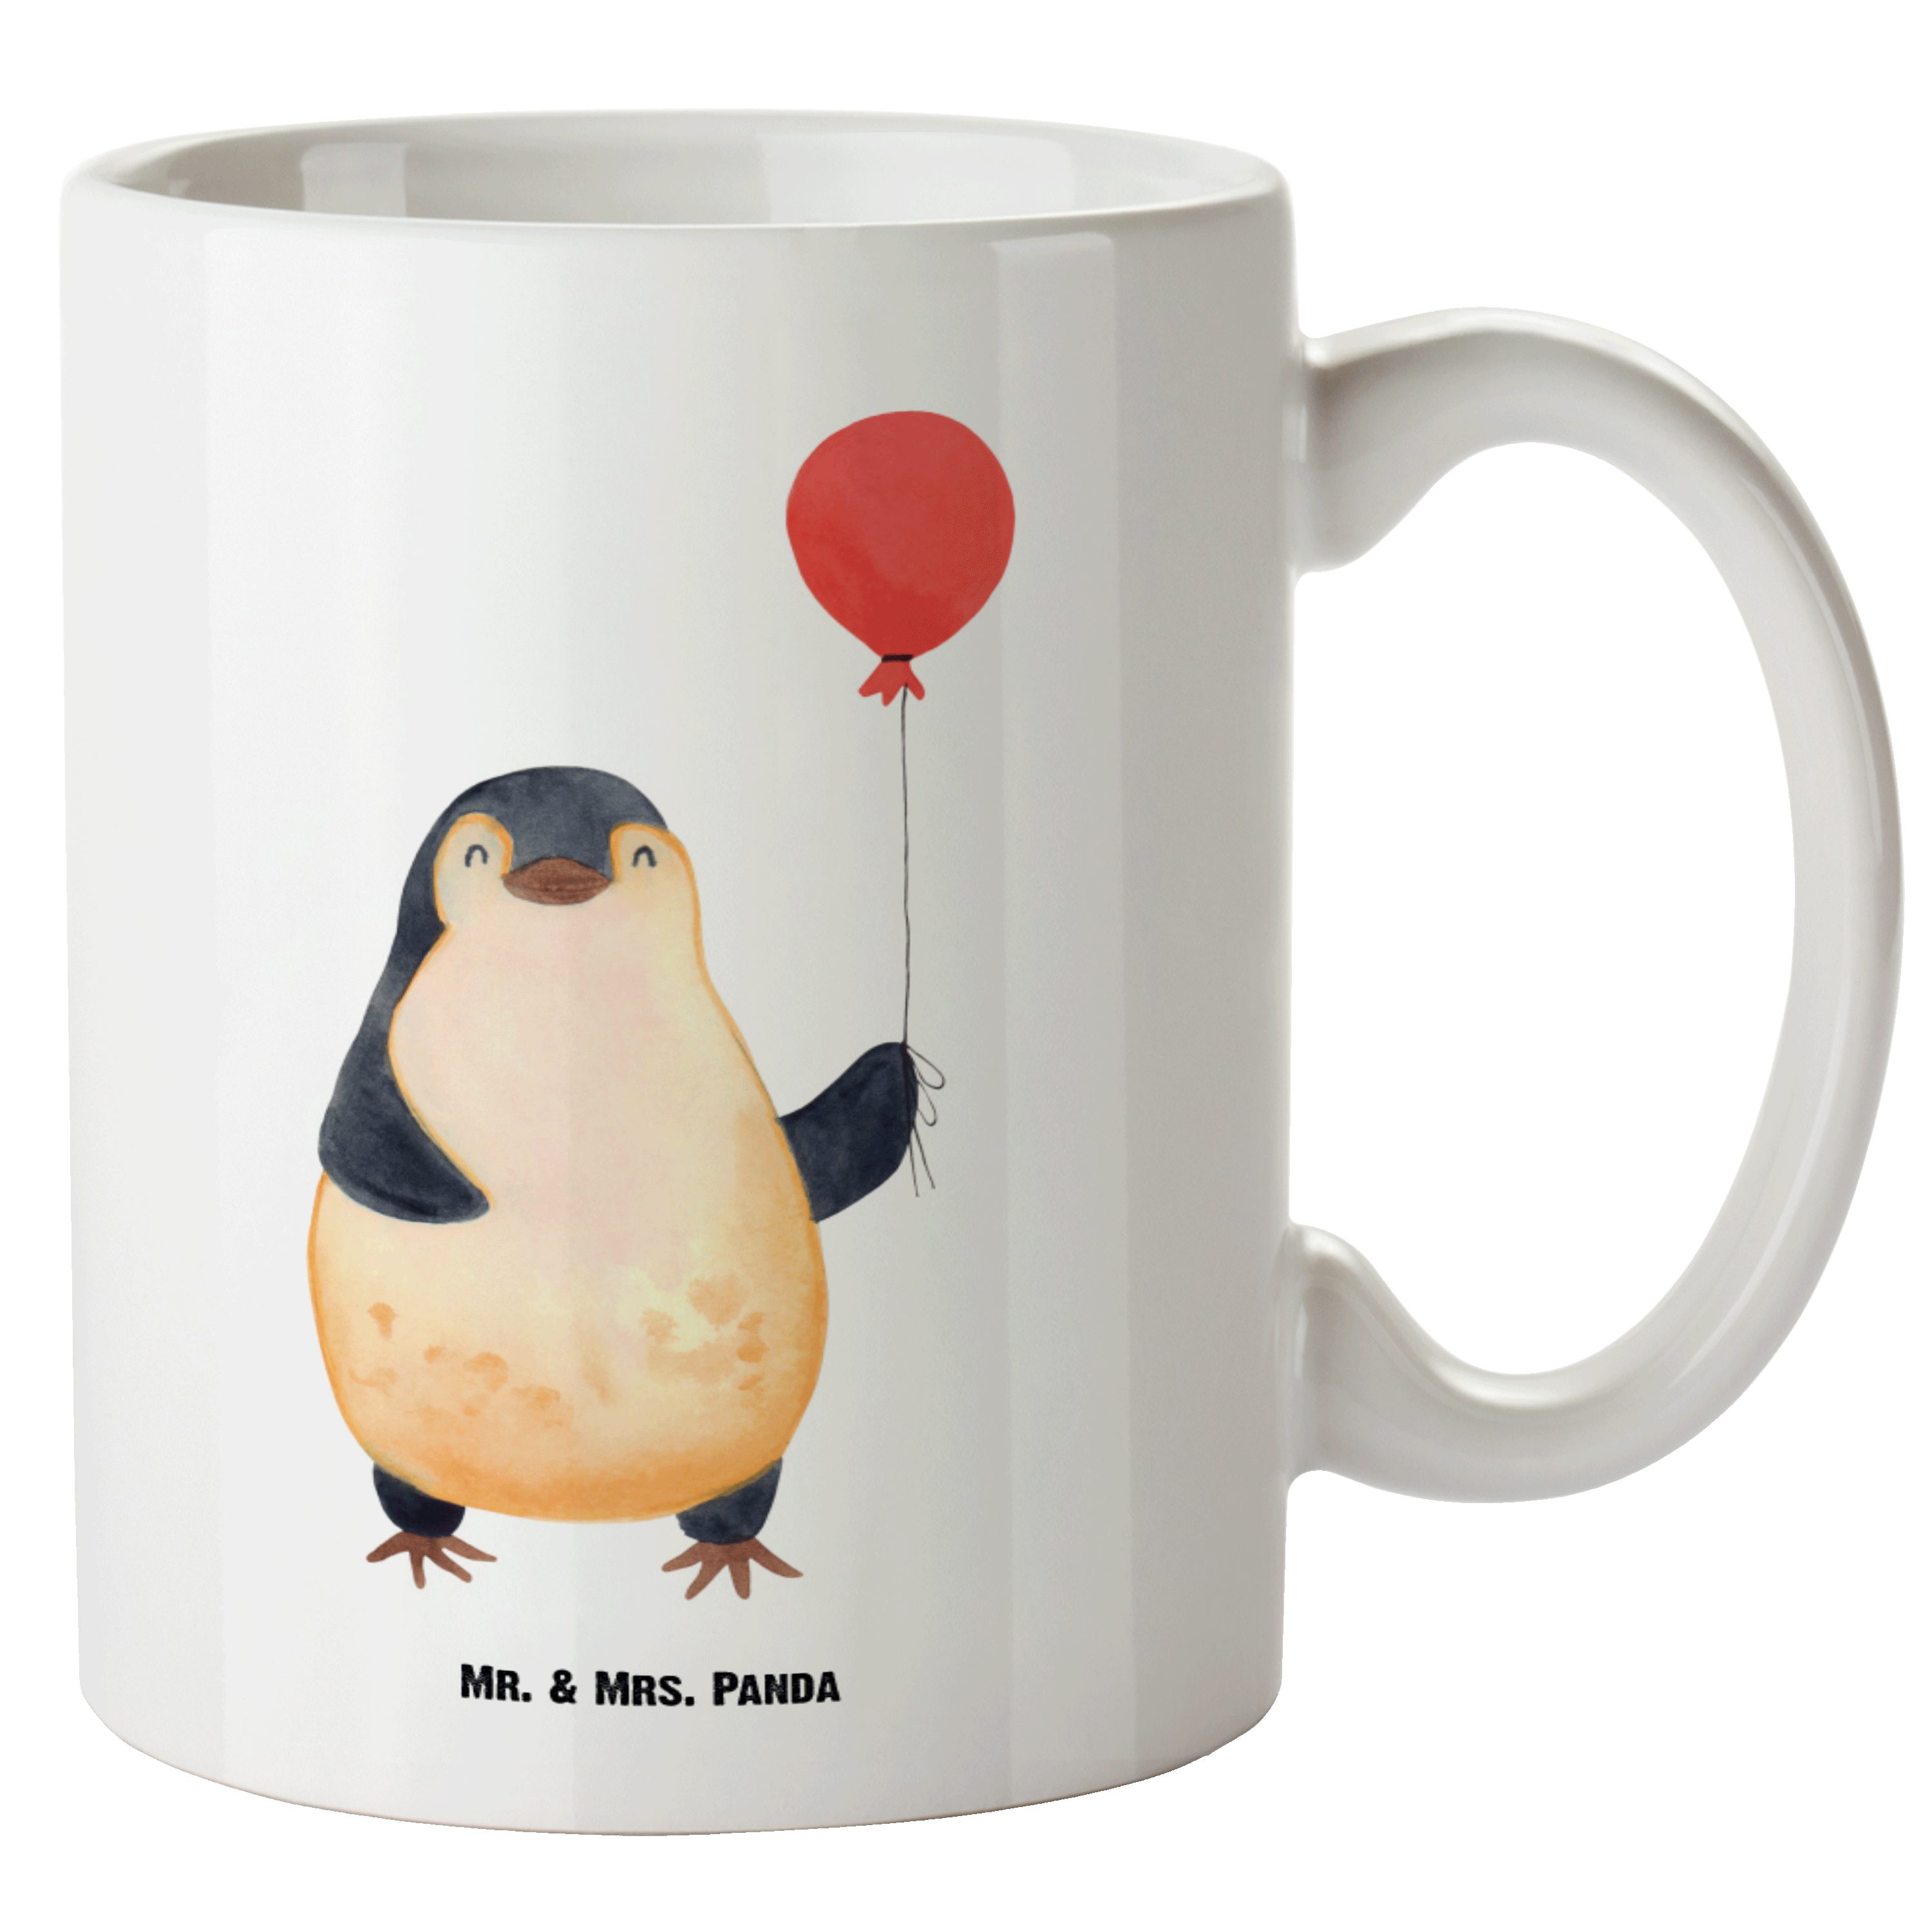 Mr. & Mrs. Panda Tasse Pinguin Luftballon - Weiß - Geschenk, Große Tasse, gute Laune, XL Bec, XL Tasse Keramik